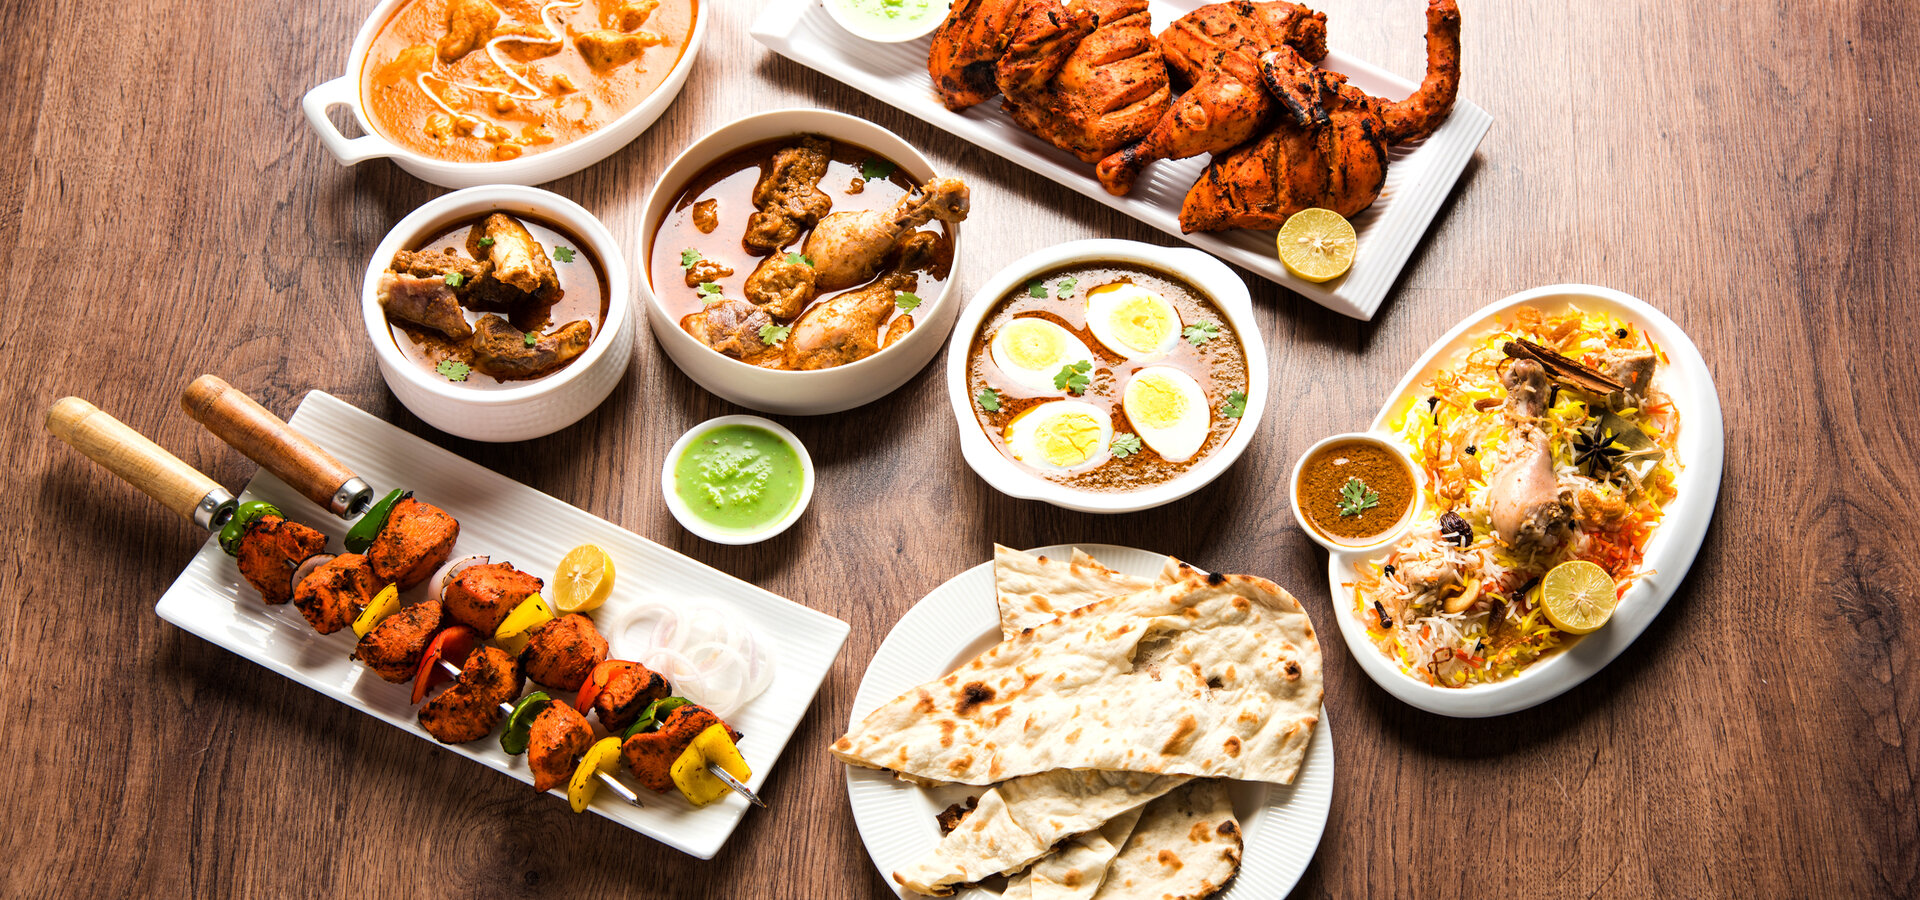 Mughlai Cuisine in India